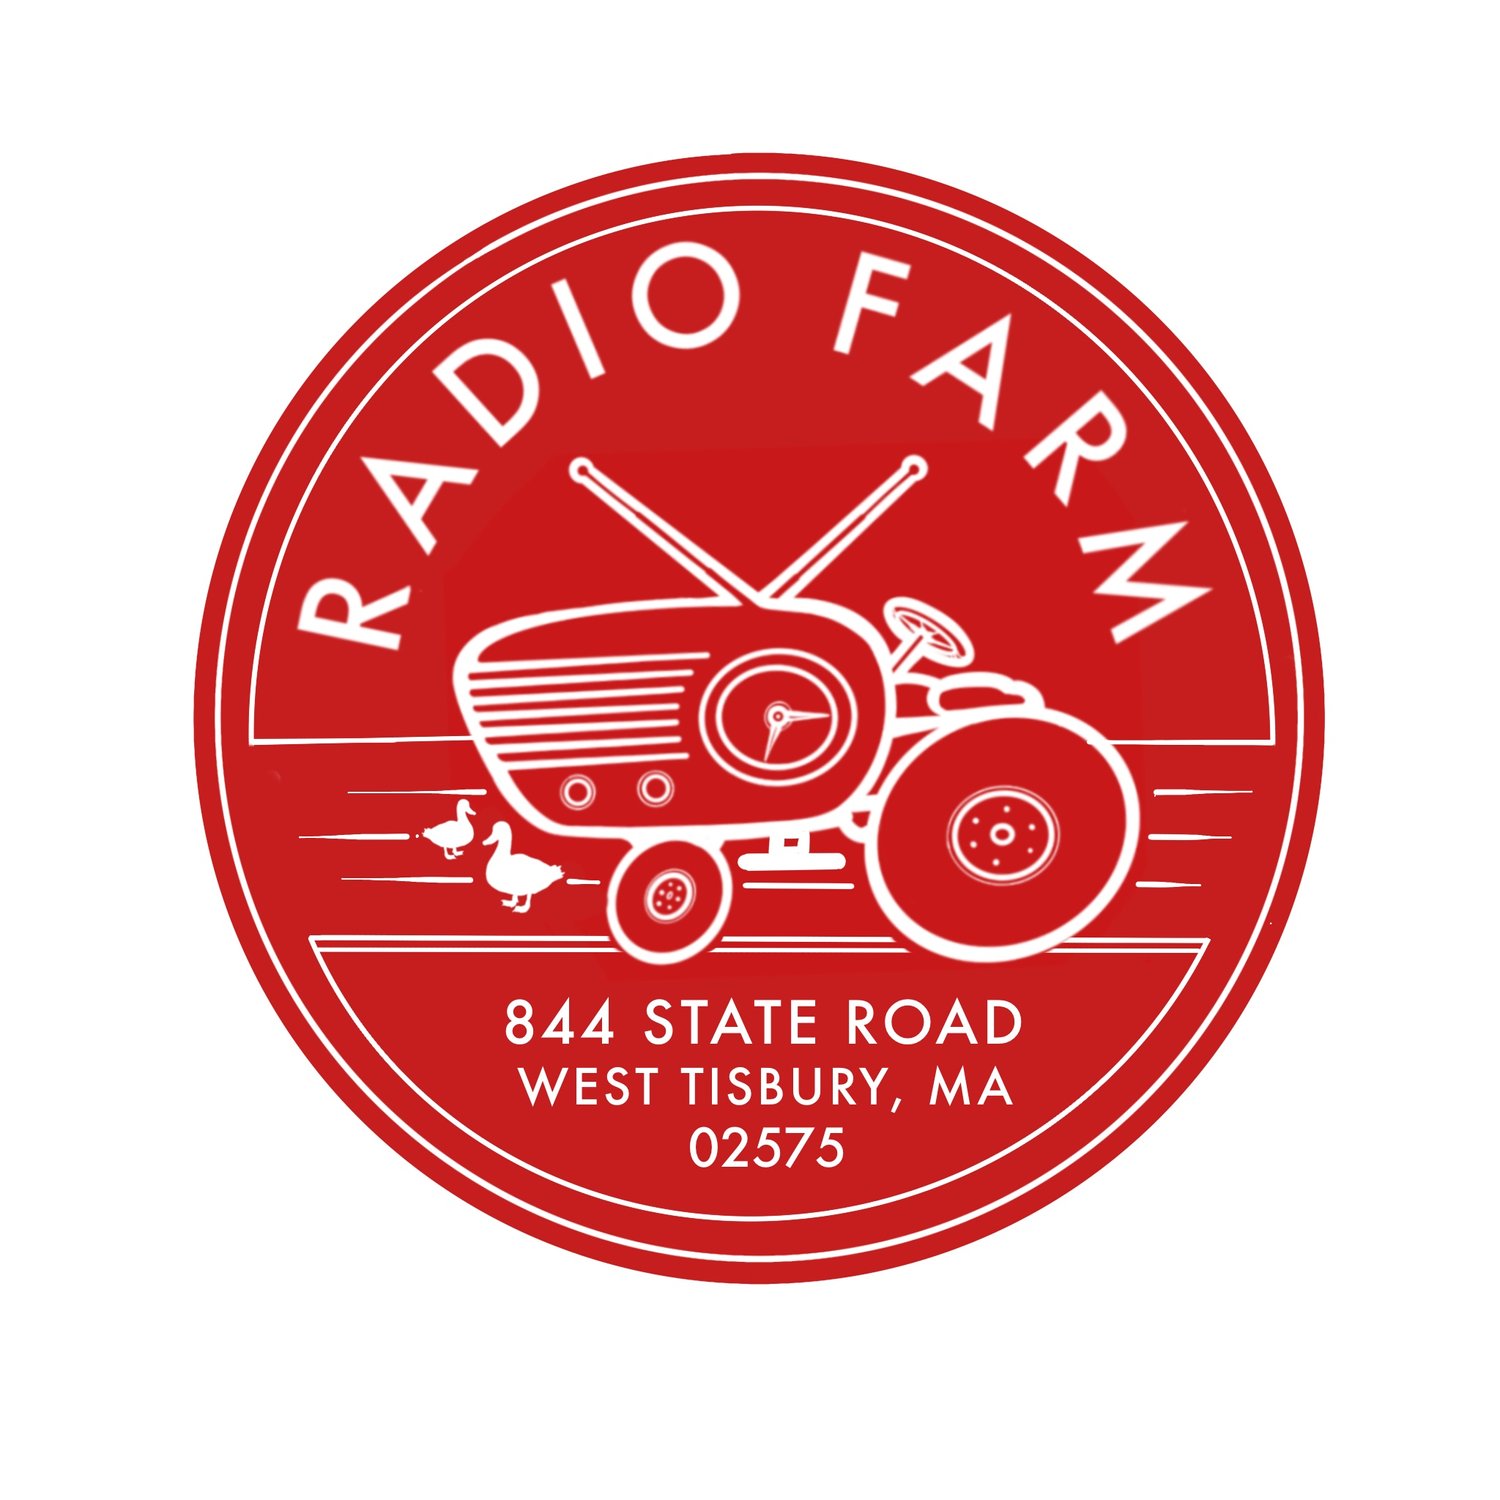 Radio Farm | Cultural organization + working farm on the island of Martha&#39;s Vineyard, MA